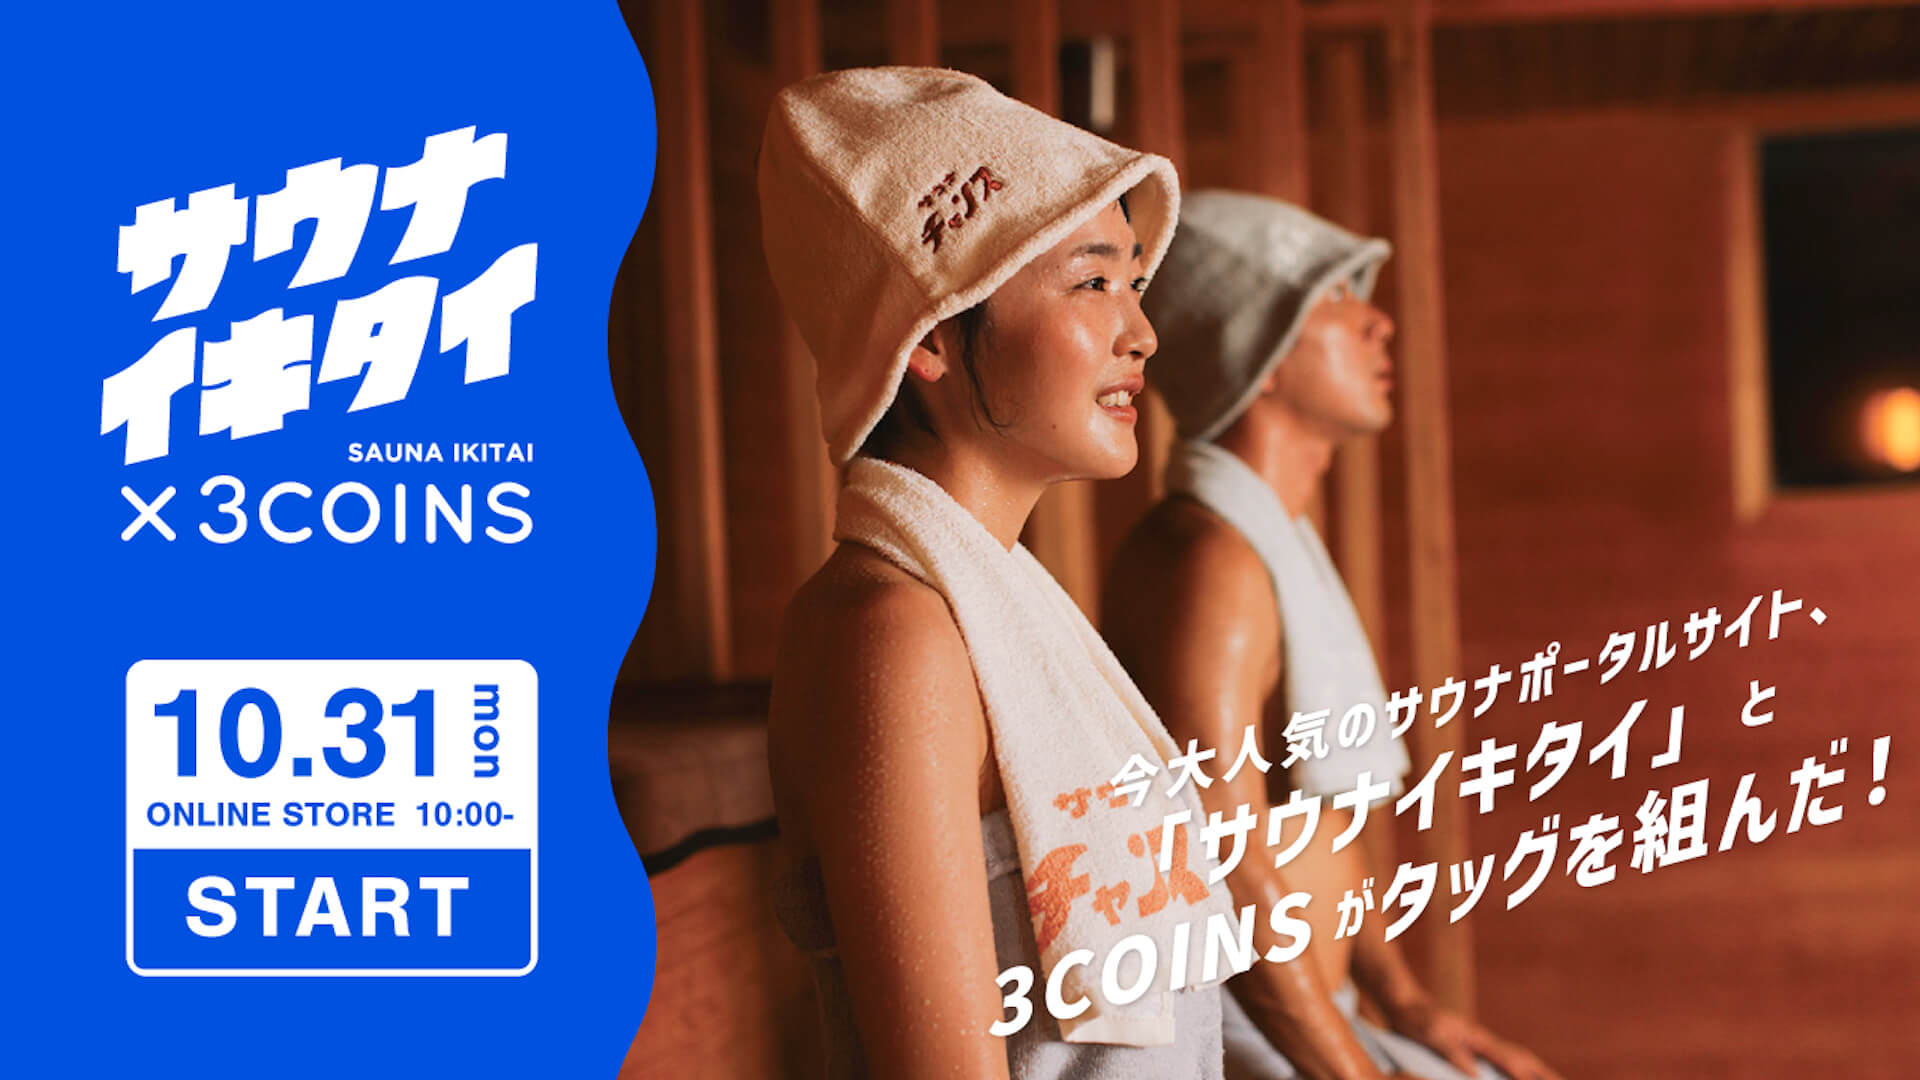 “サウナイキタイ×3COINS”タッグを組んだサウナグッズが発売決定！ fashion221025-sauna-ikitai-02